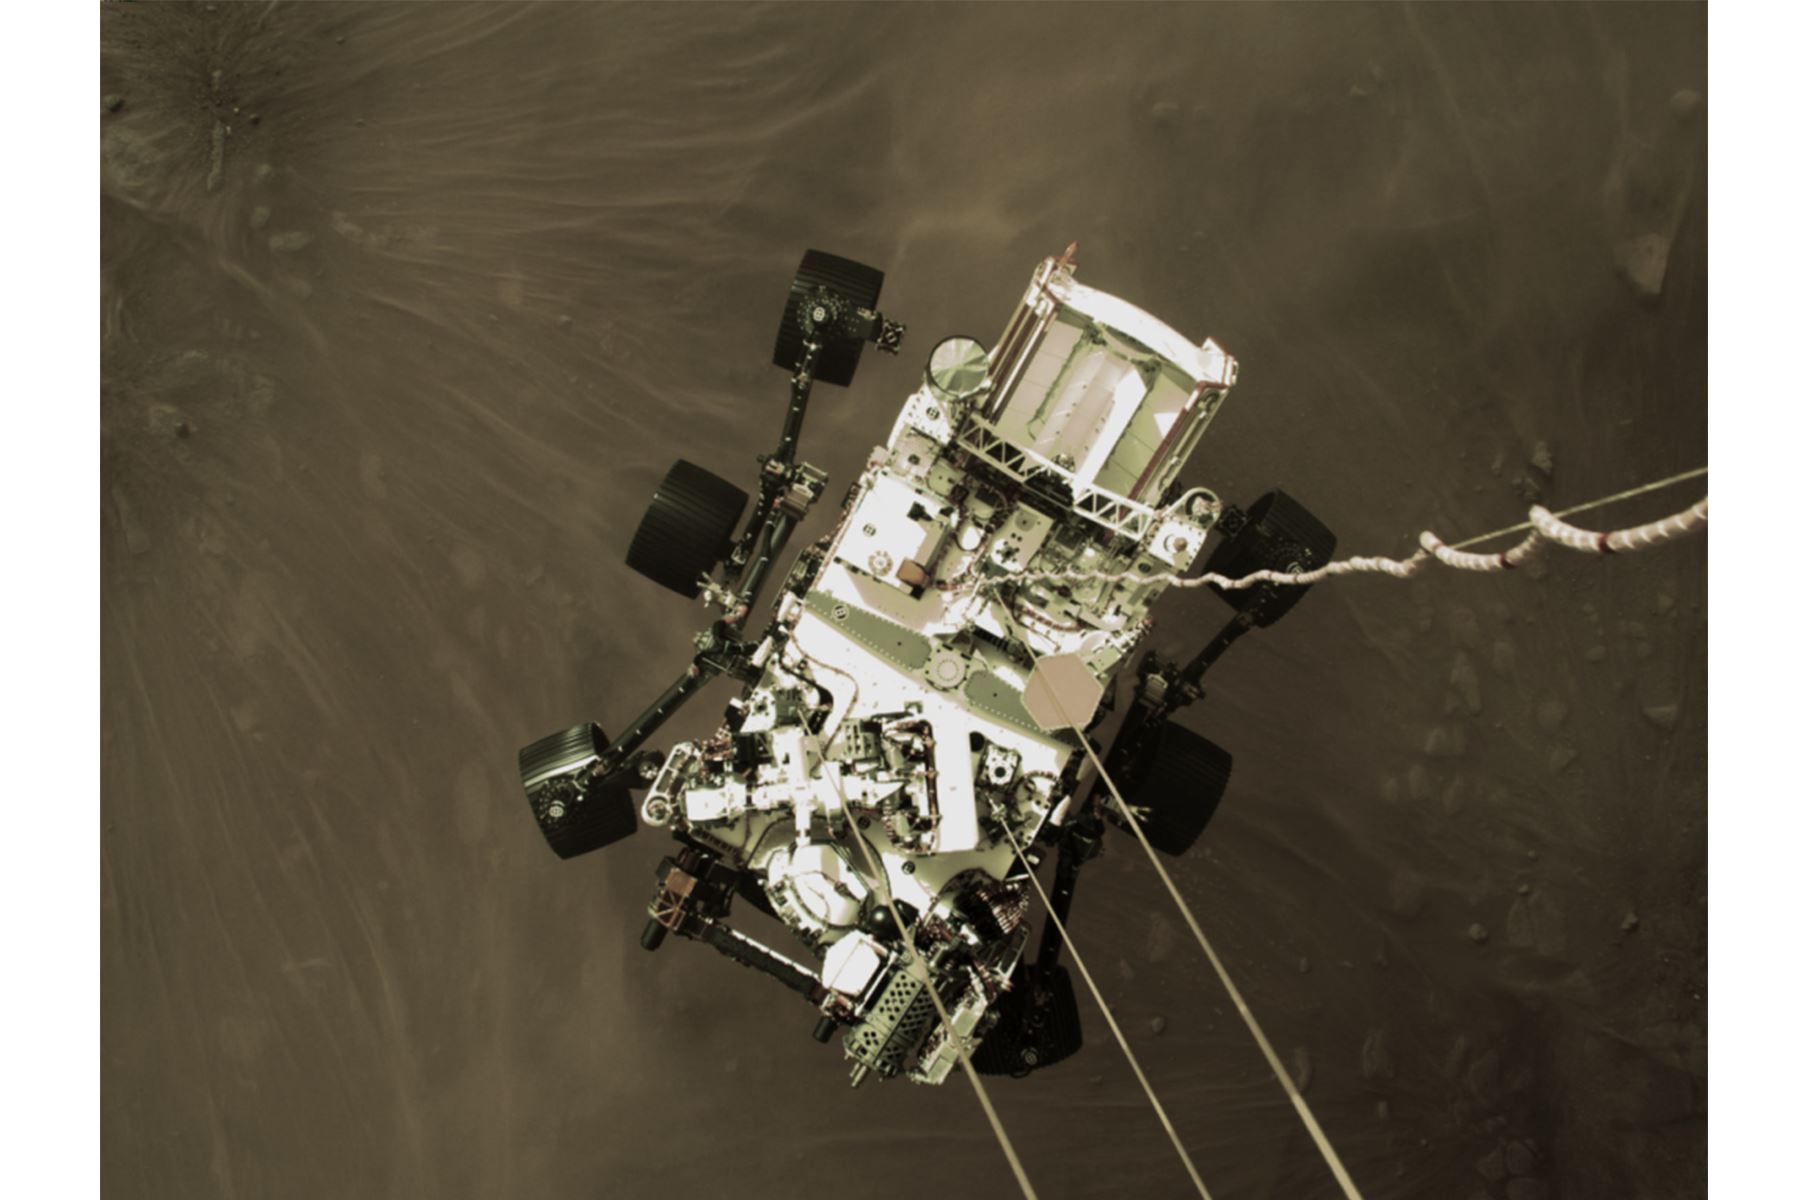 La etapa de descenso de Mars 2020 baja el rover Perseverance de la NASA al Planeta Rojo el 18 de febrero de 2021. La imagen es de un vídeo capturado por una cámara a bordo. Créditos: NASA/JPL Caltech.